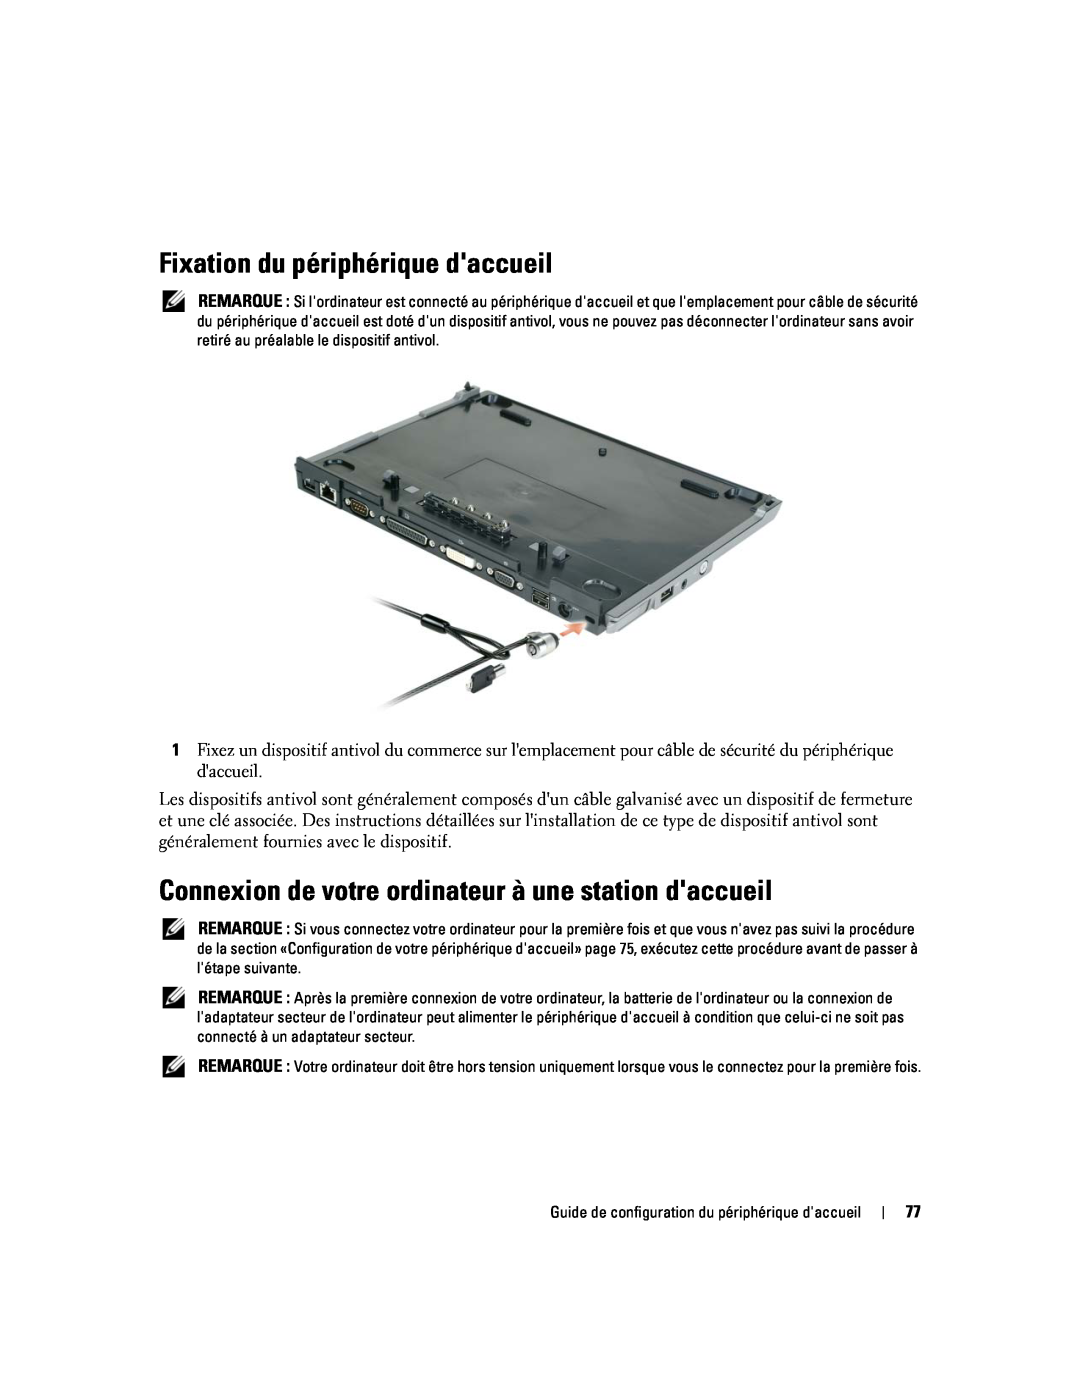 Dell Model PR09S setup guide Fixation du périphérique daccueil, Connexion de votre ordinateur à une station daccueil 